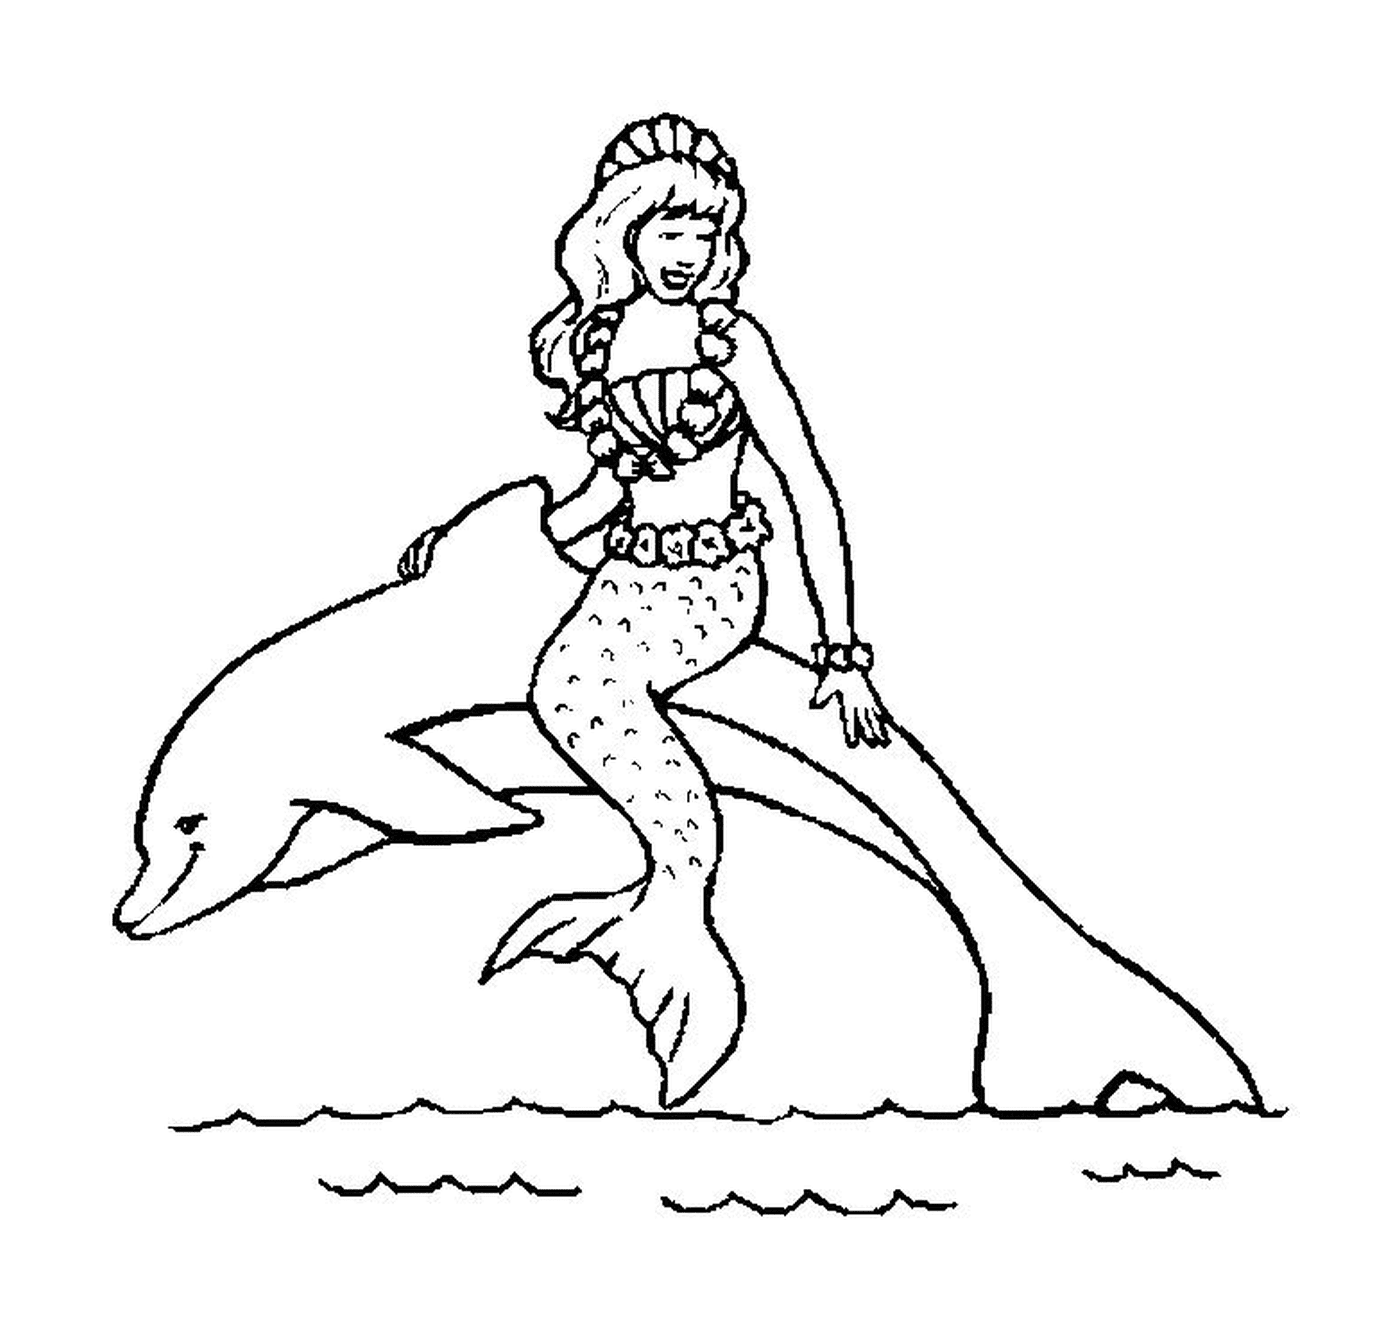  एक औरत पानी में डॉल्फ़िन सवारी करती है 